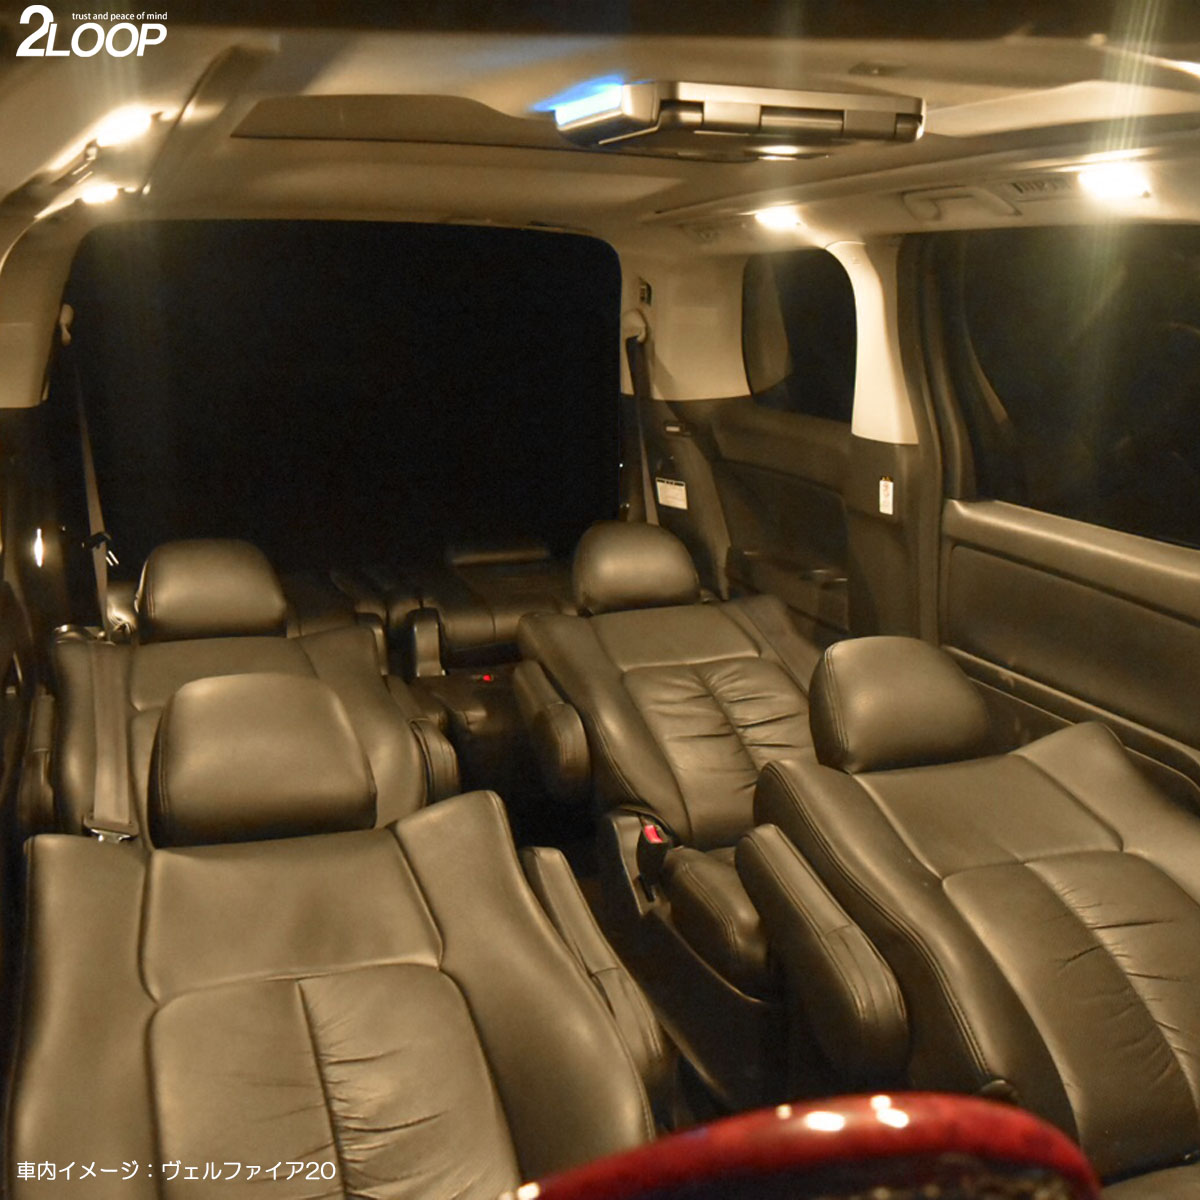 楽天市場 セレナ C25系 Led ルームランプ 暖かい光 高級感を追求 3000k 車検対応 3チップsmd9点 電球色 1年保証 あす楽可 2loop